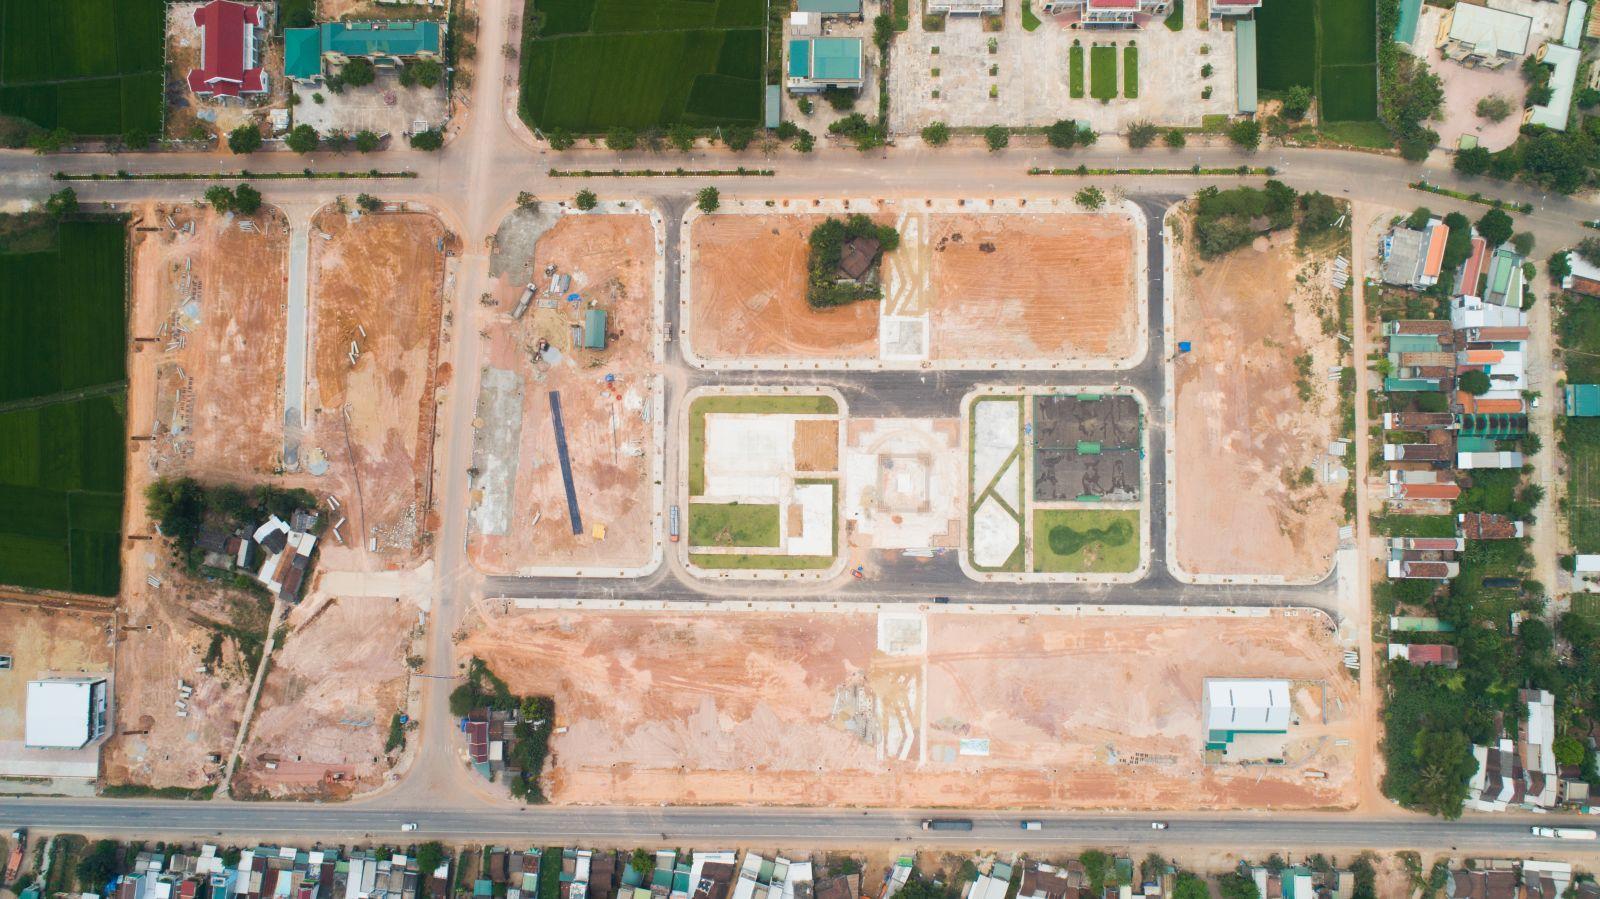 [GÓC CẬP NHẬT] DỰ ÁN SUNFLORIA CITY THÁNG 03/2019 - Viet Nam Smart City